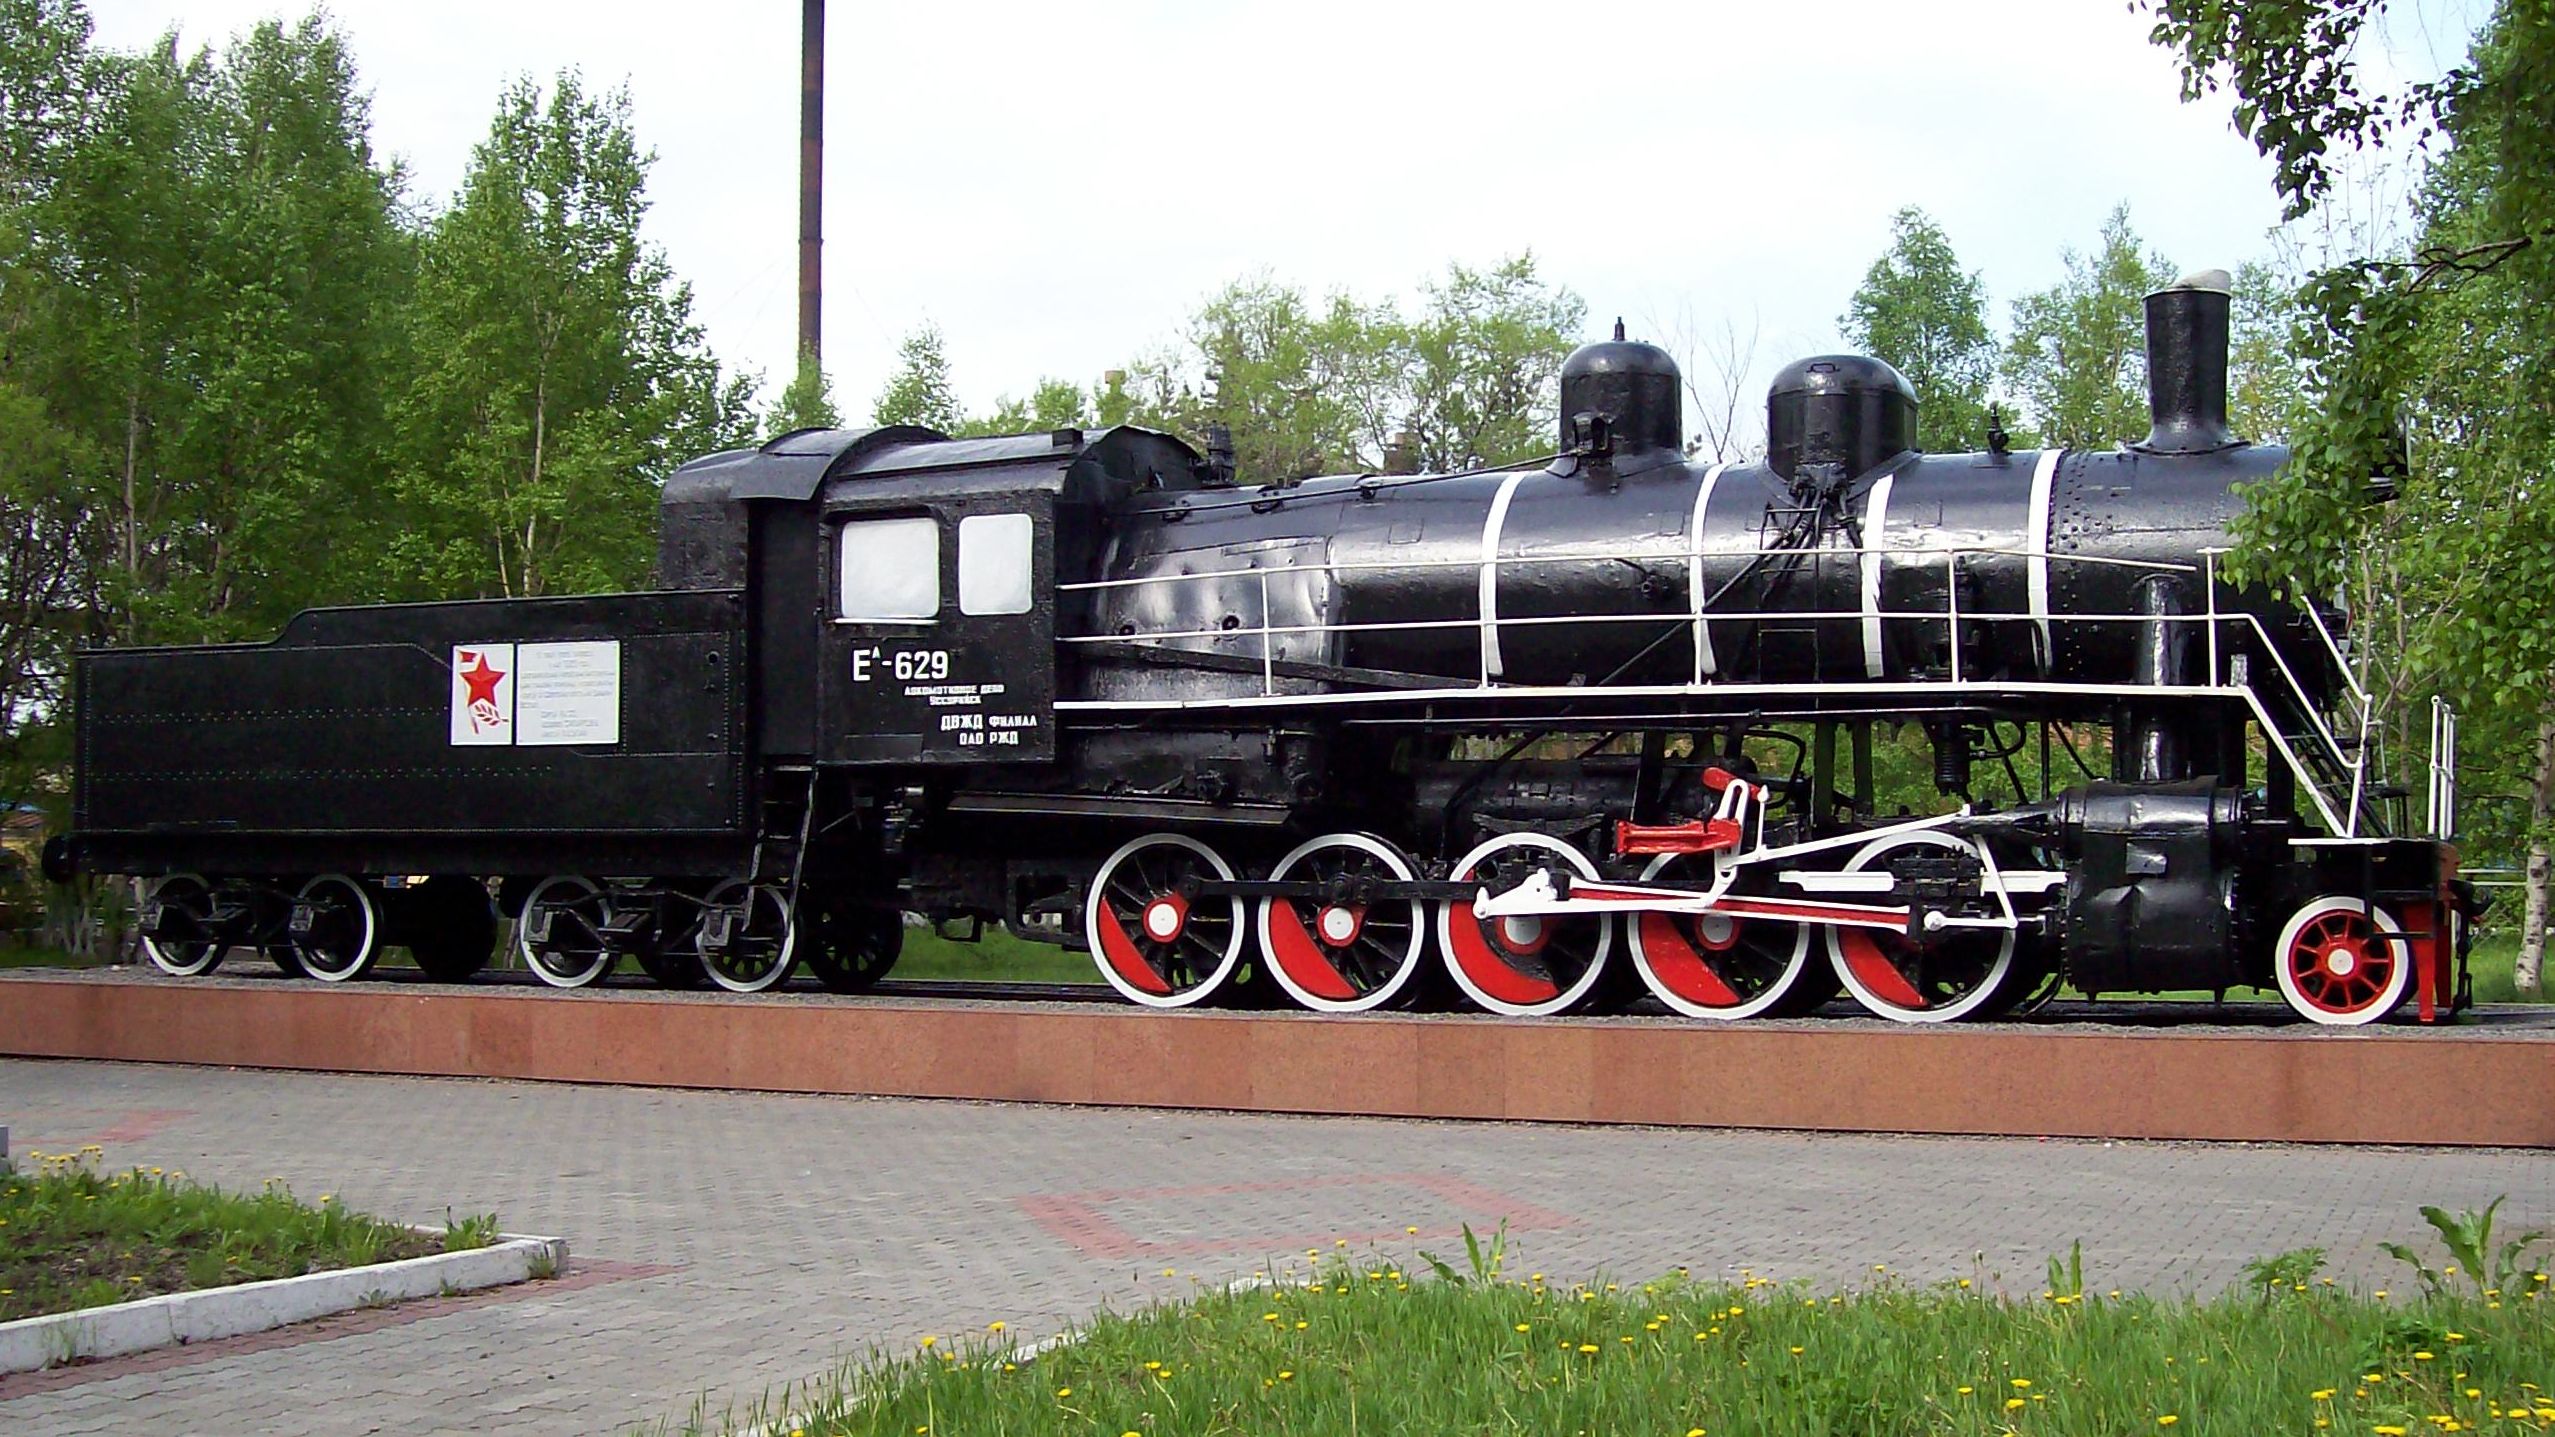 【纪事】在质疑声中坚挺至今的双城子蒸汽机车纪念碑——yel-629号